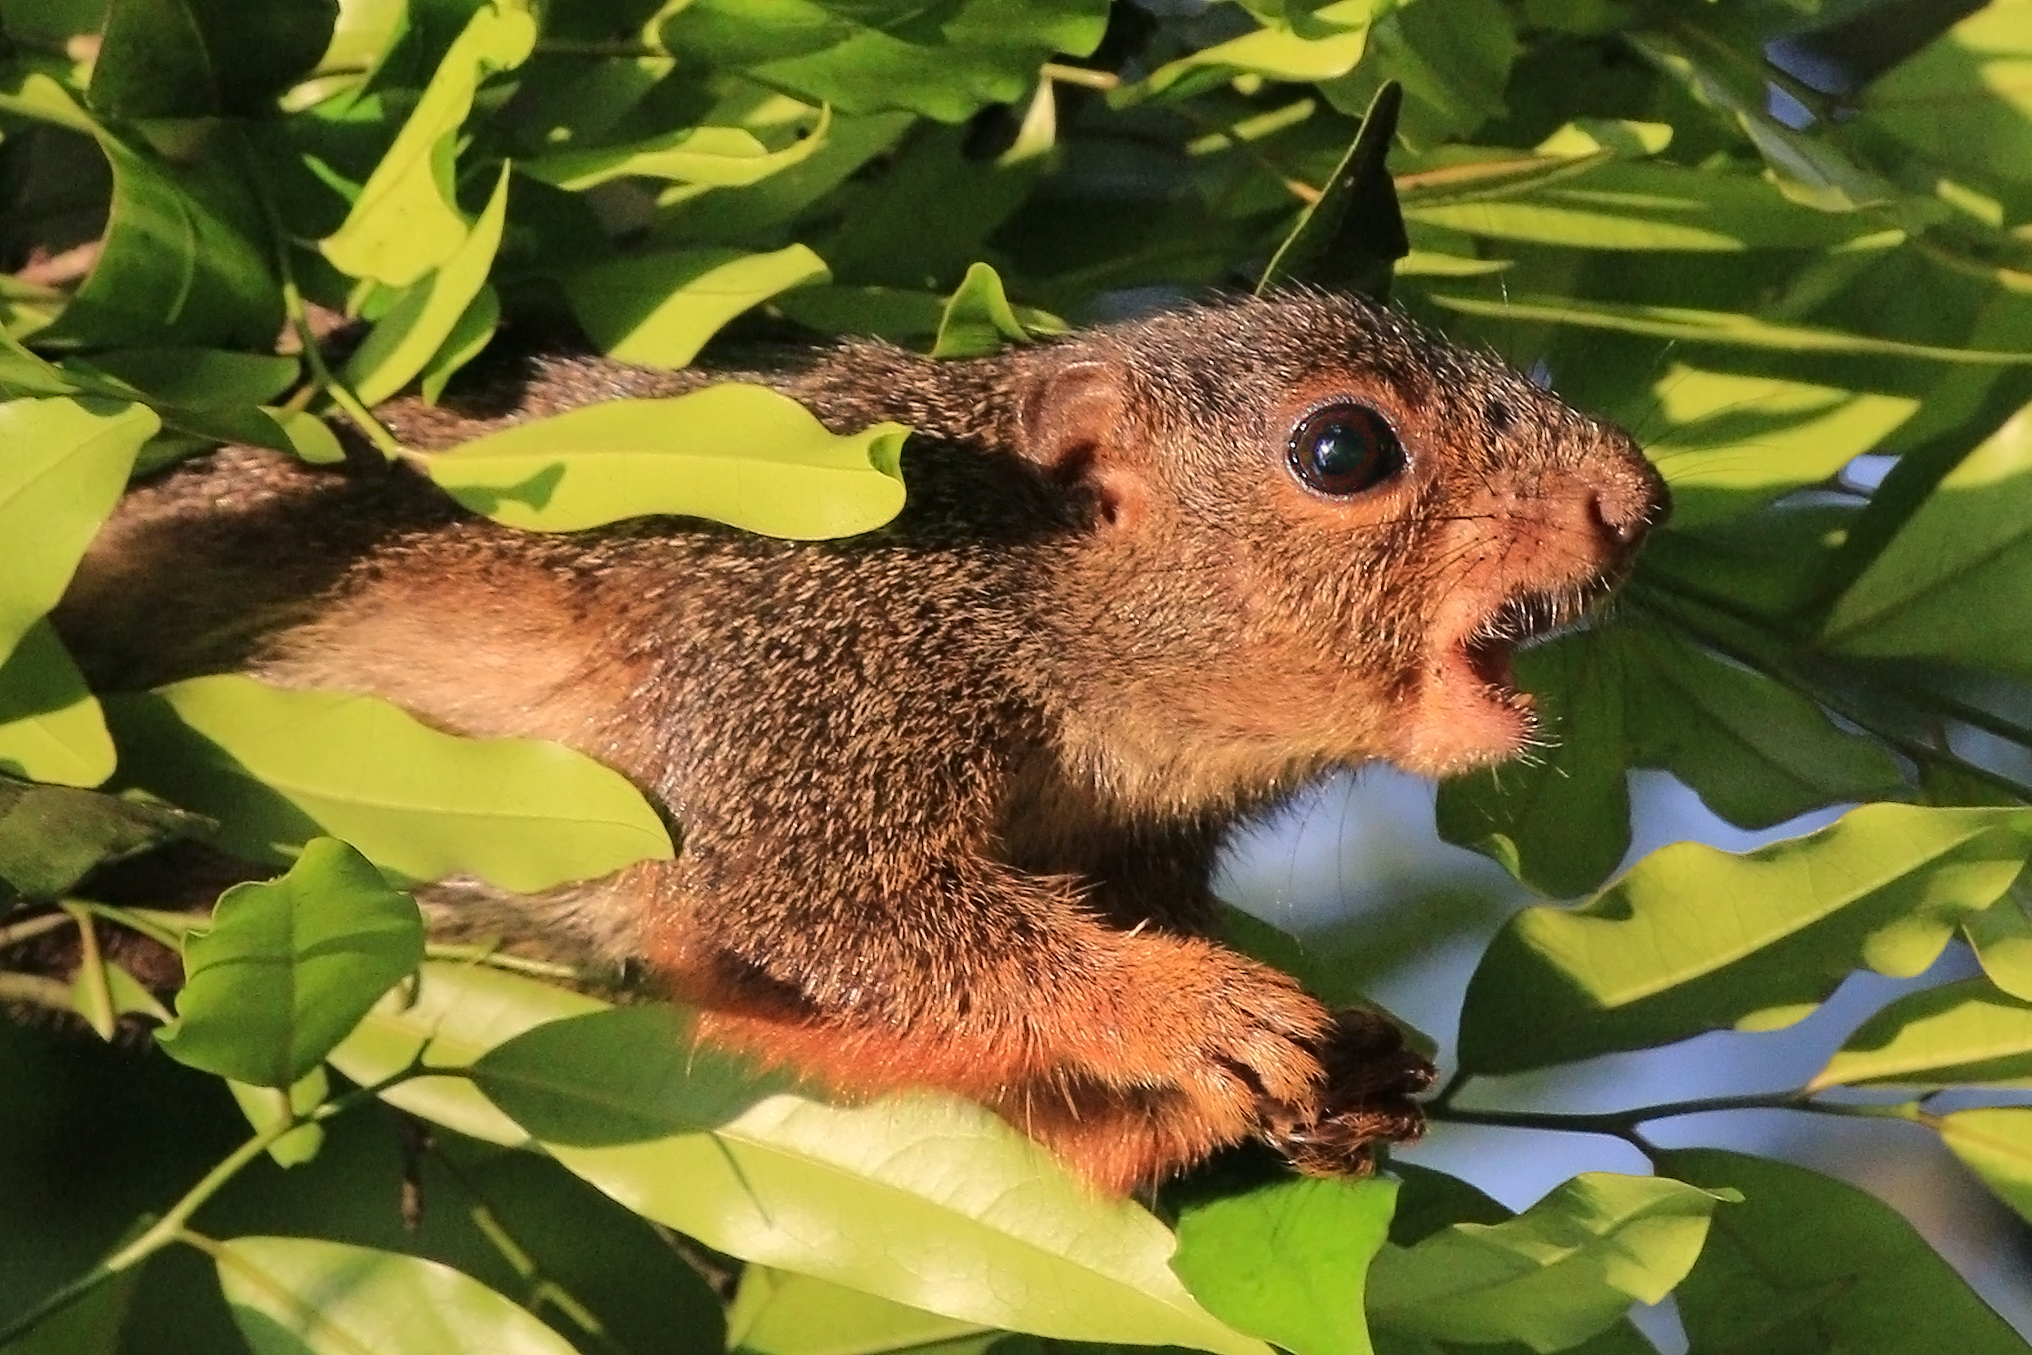 Red-legged sun squirrel (Heliosciurus rufobrachium) head